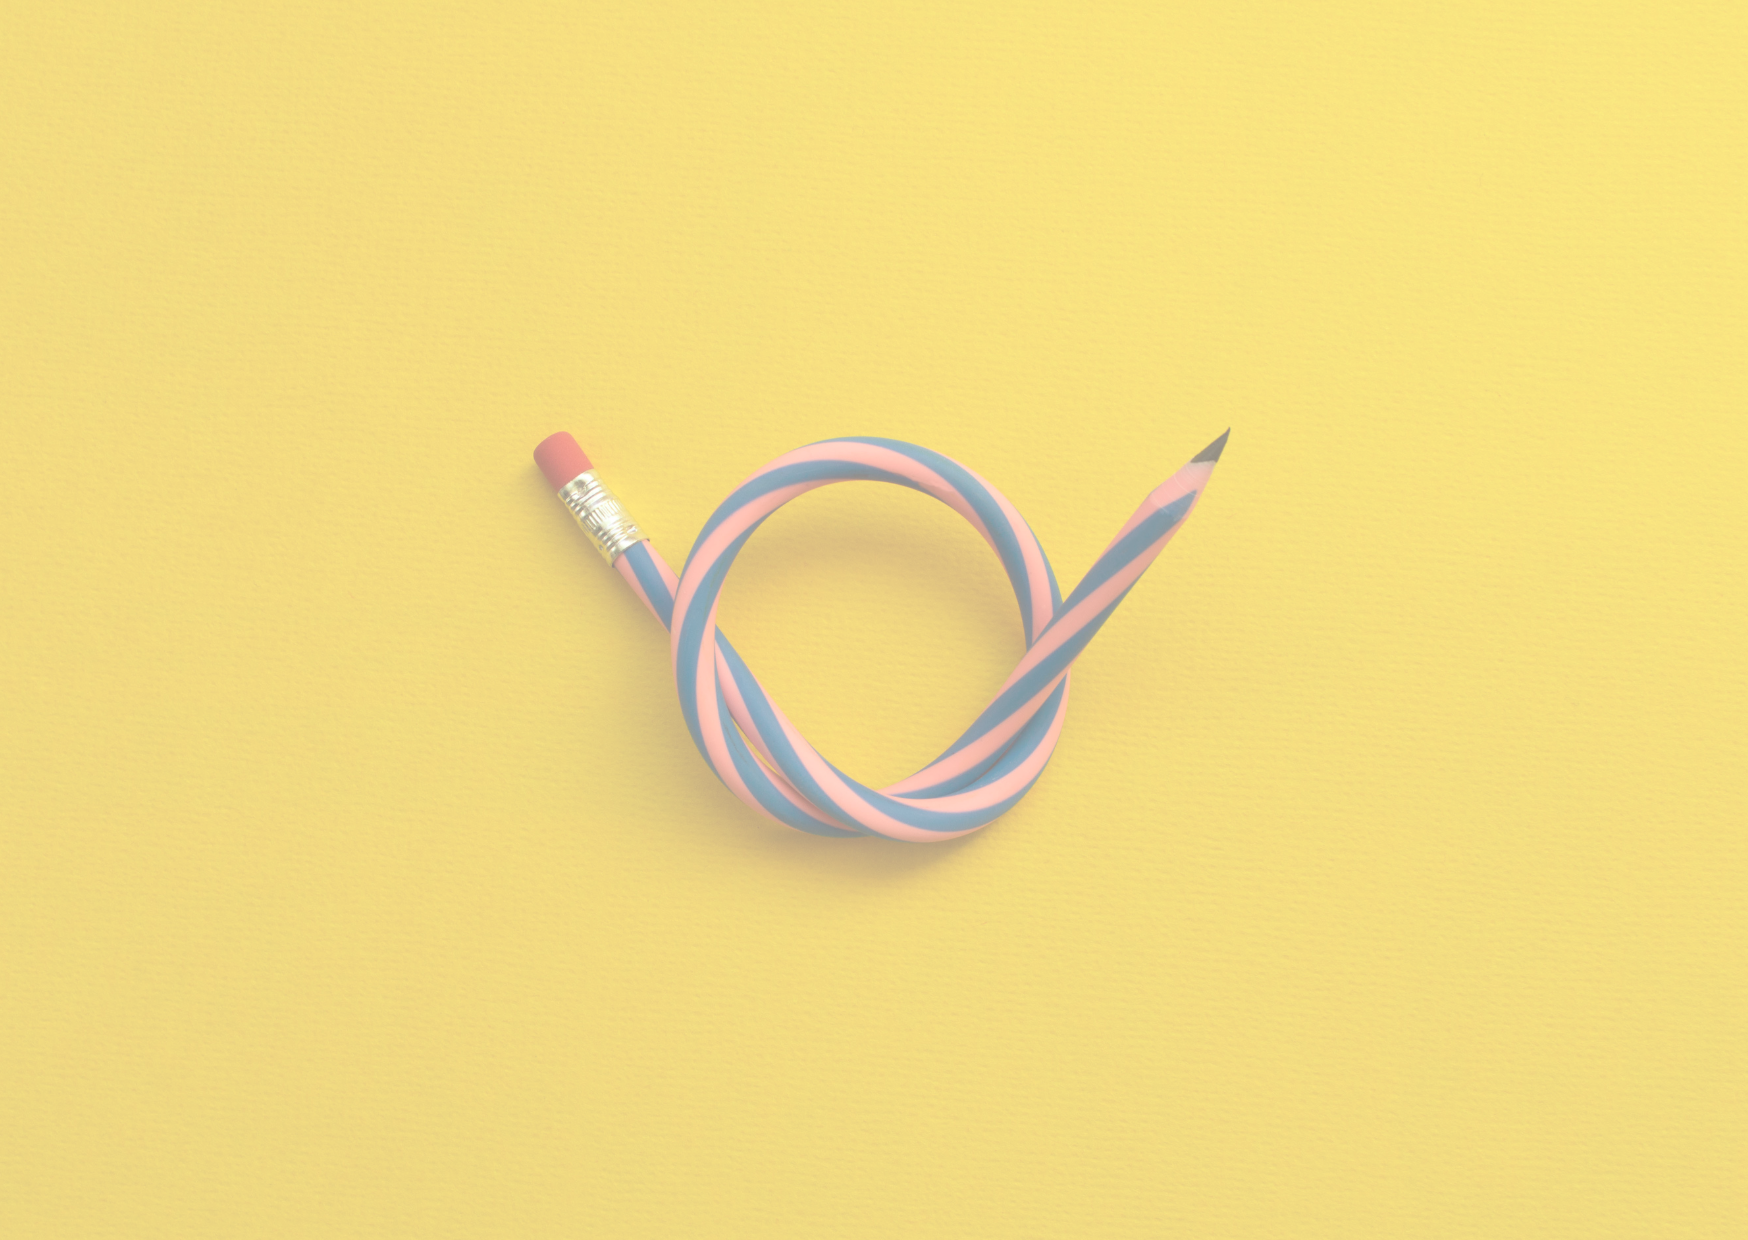 Ein einfacher Bleistift mit Radiergummiende liegt auf einem einfarbigen gelben Hintergrund und ist so gebogen, dass er eine Schleifenform bildet, was Kreativität und Flexibilität im Denken symbolisiert.